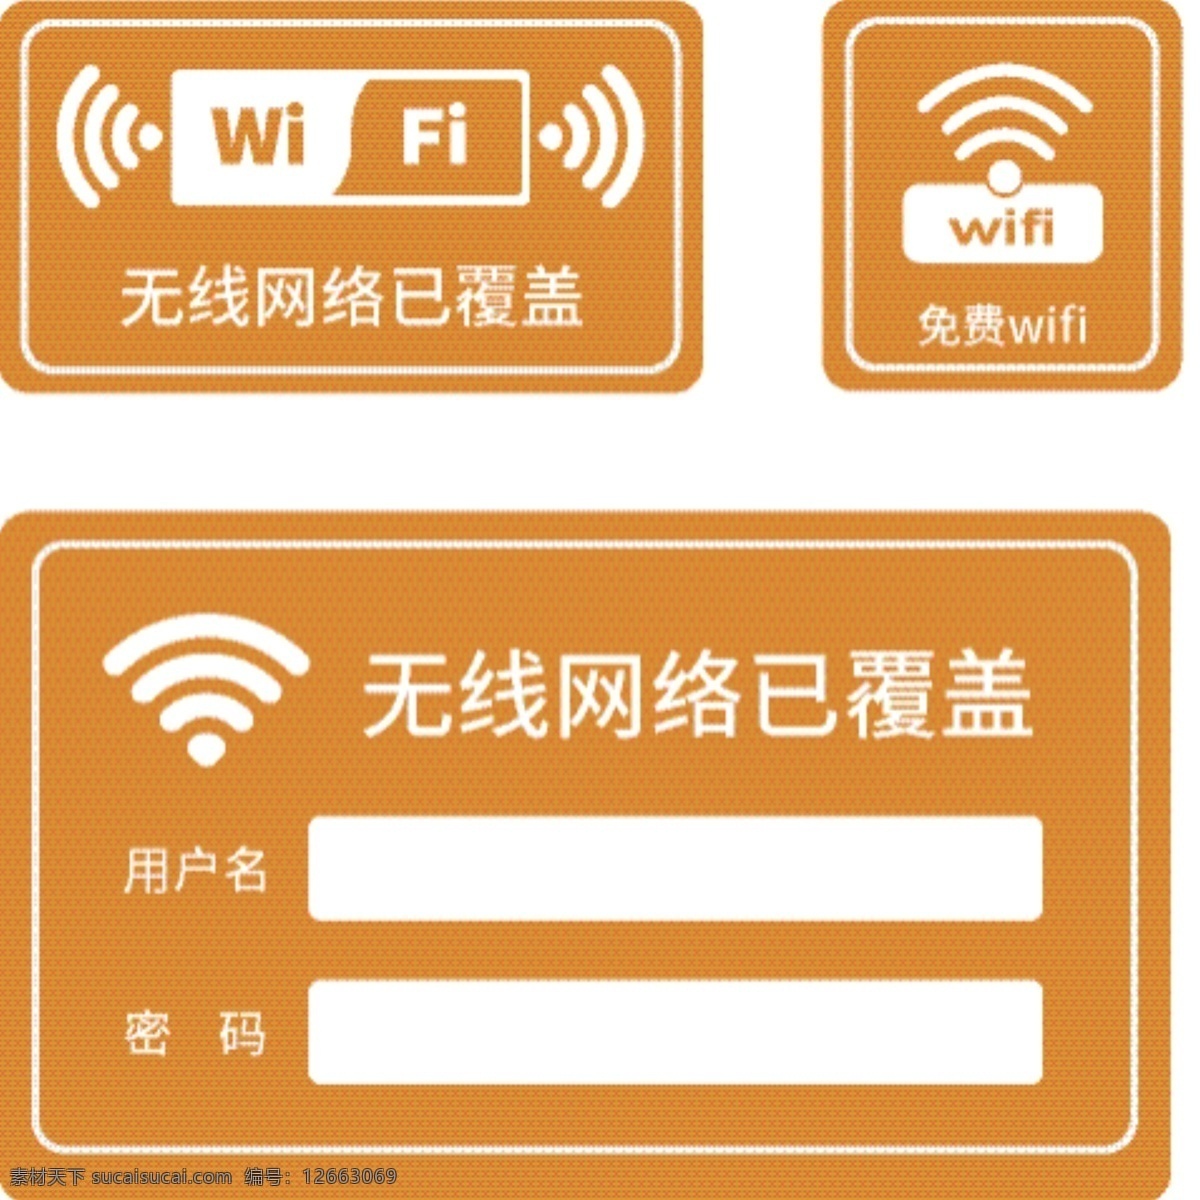 橙色 简约 wifi 密码 门 贴 wifi门贴 wifi密码 账号 无线网络 wifi标识 导视系统 vi 导视 门贴 展板模板